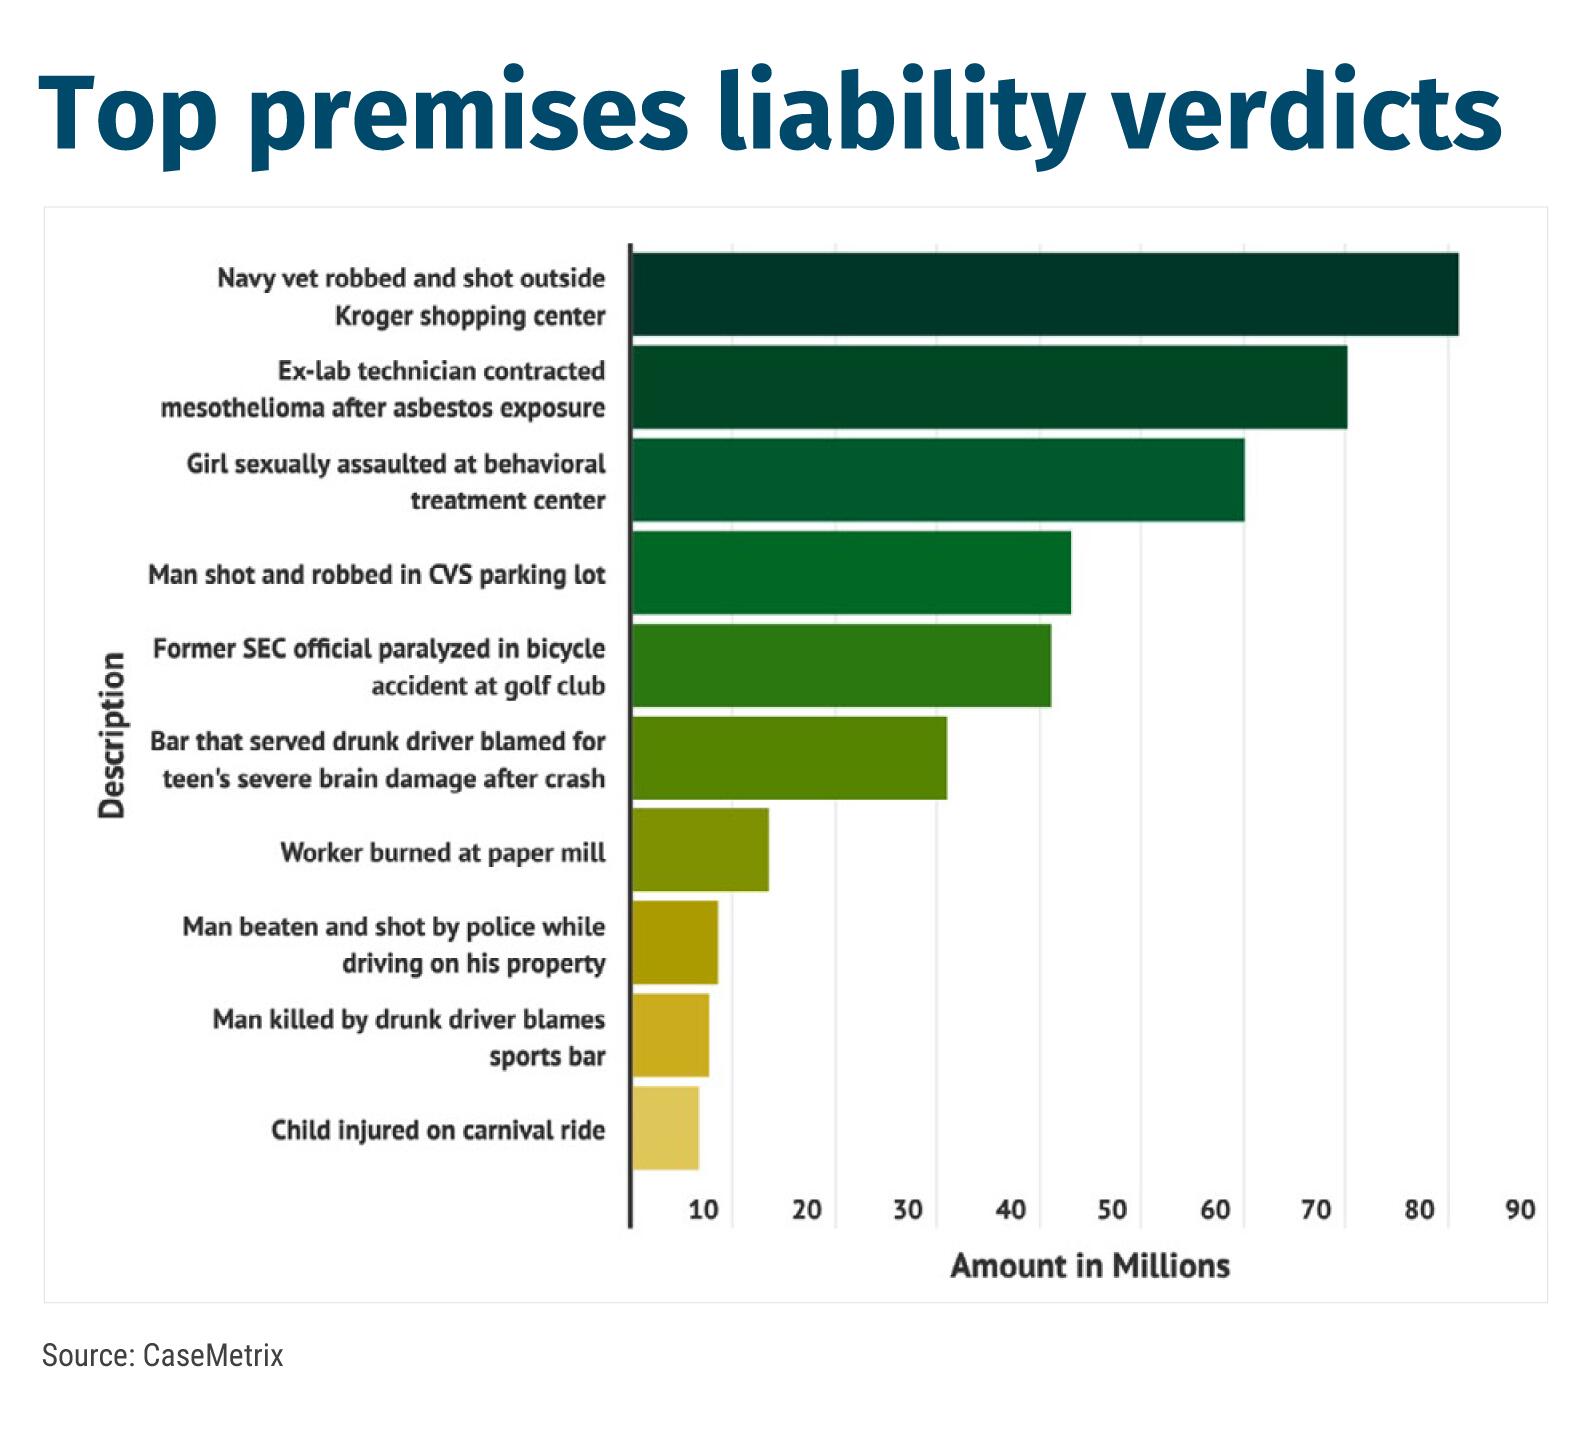 Top premises liability verdicts